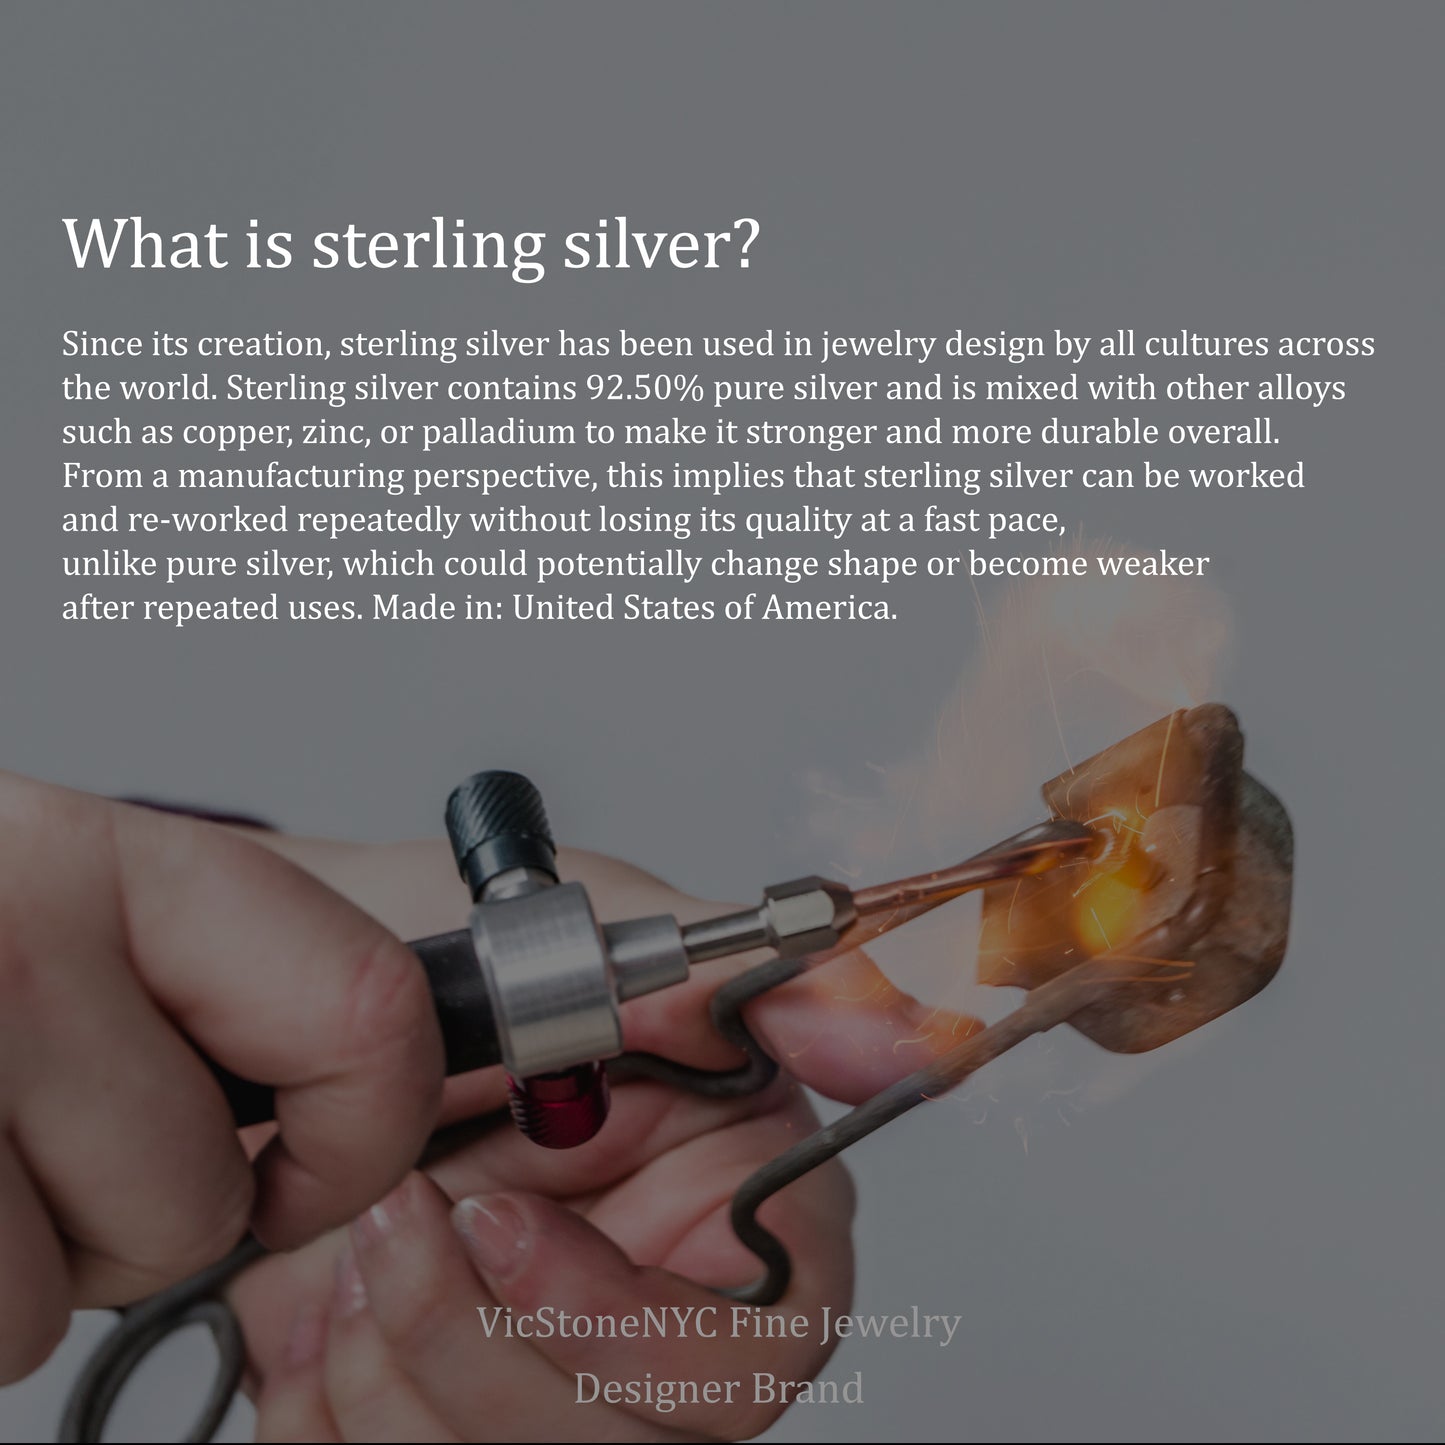 Handmade Twist Sterling Silver Hoop Earrings